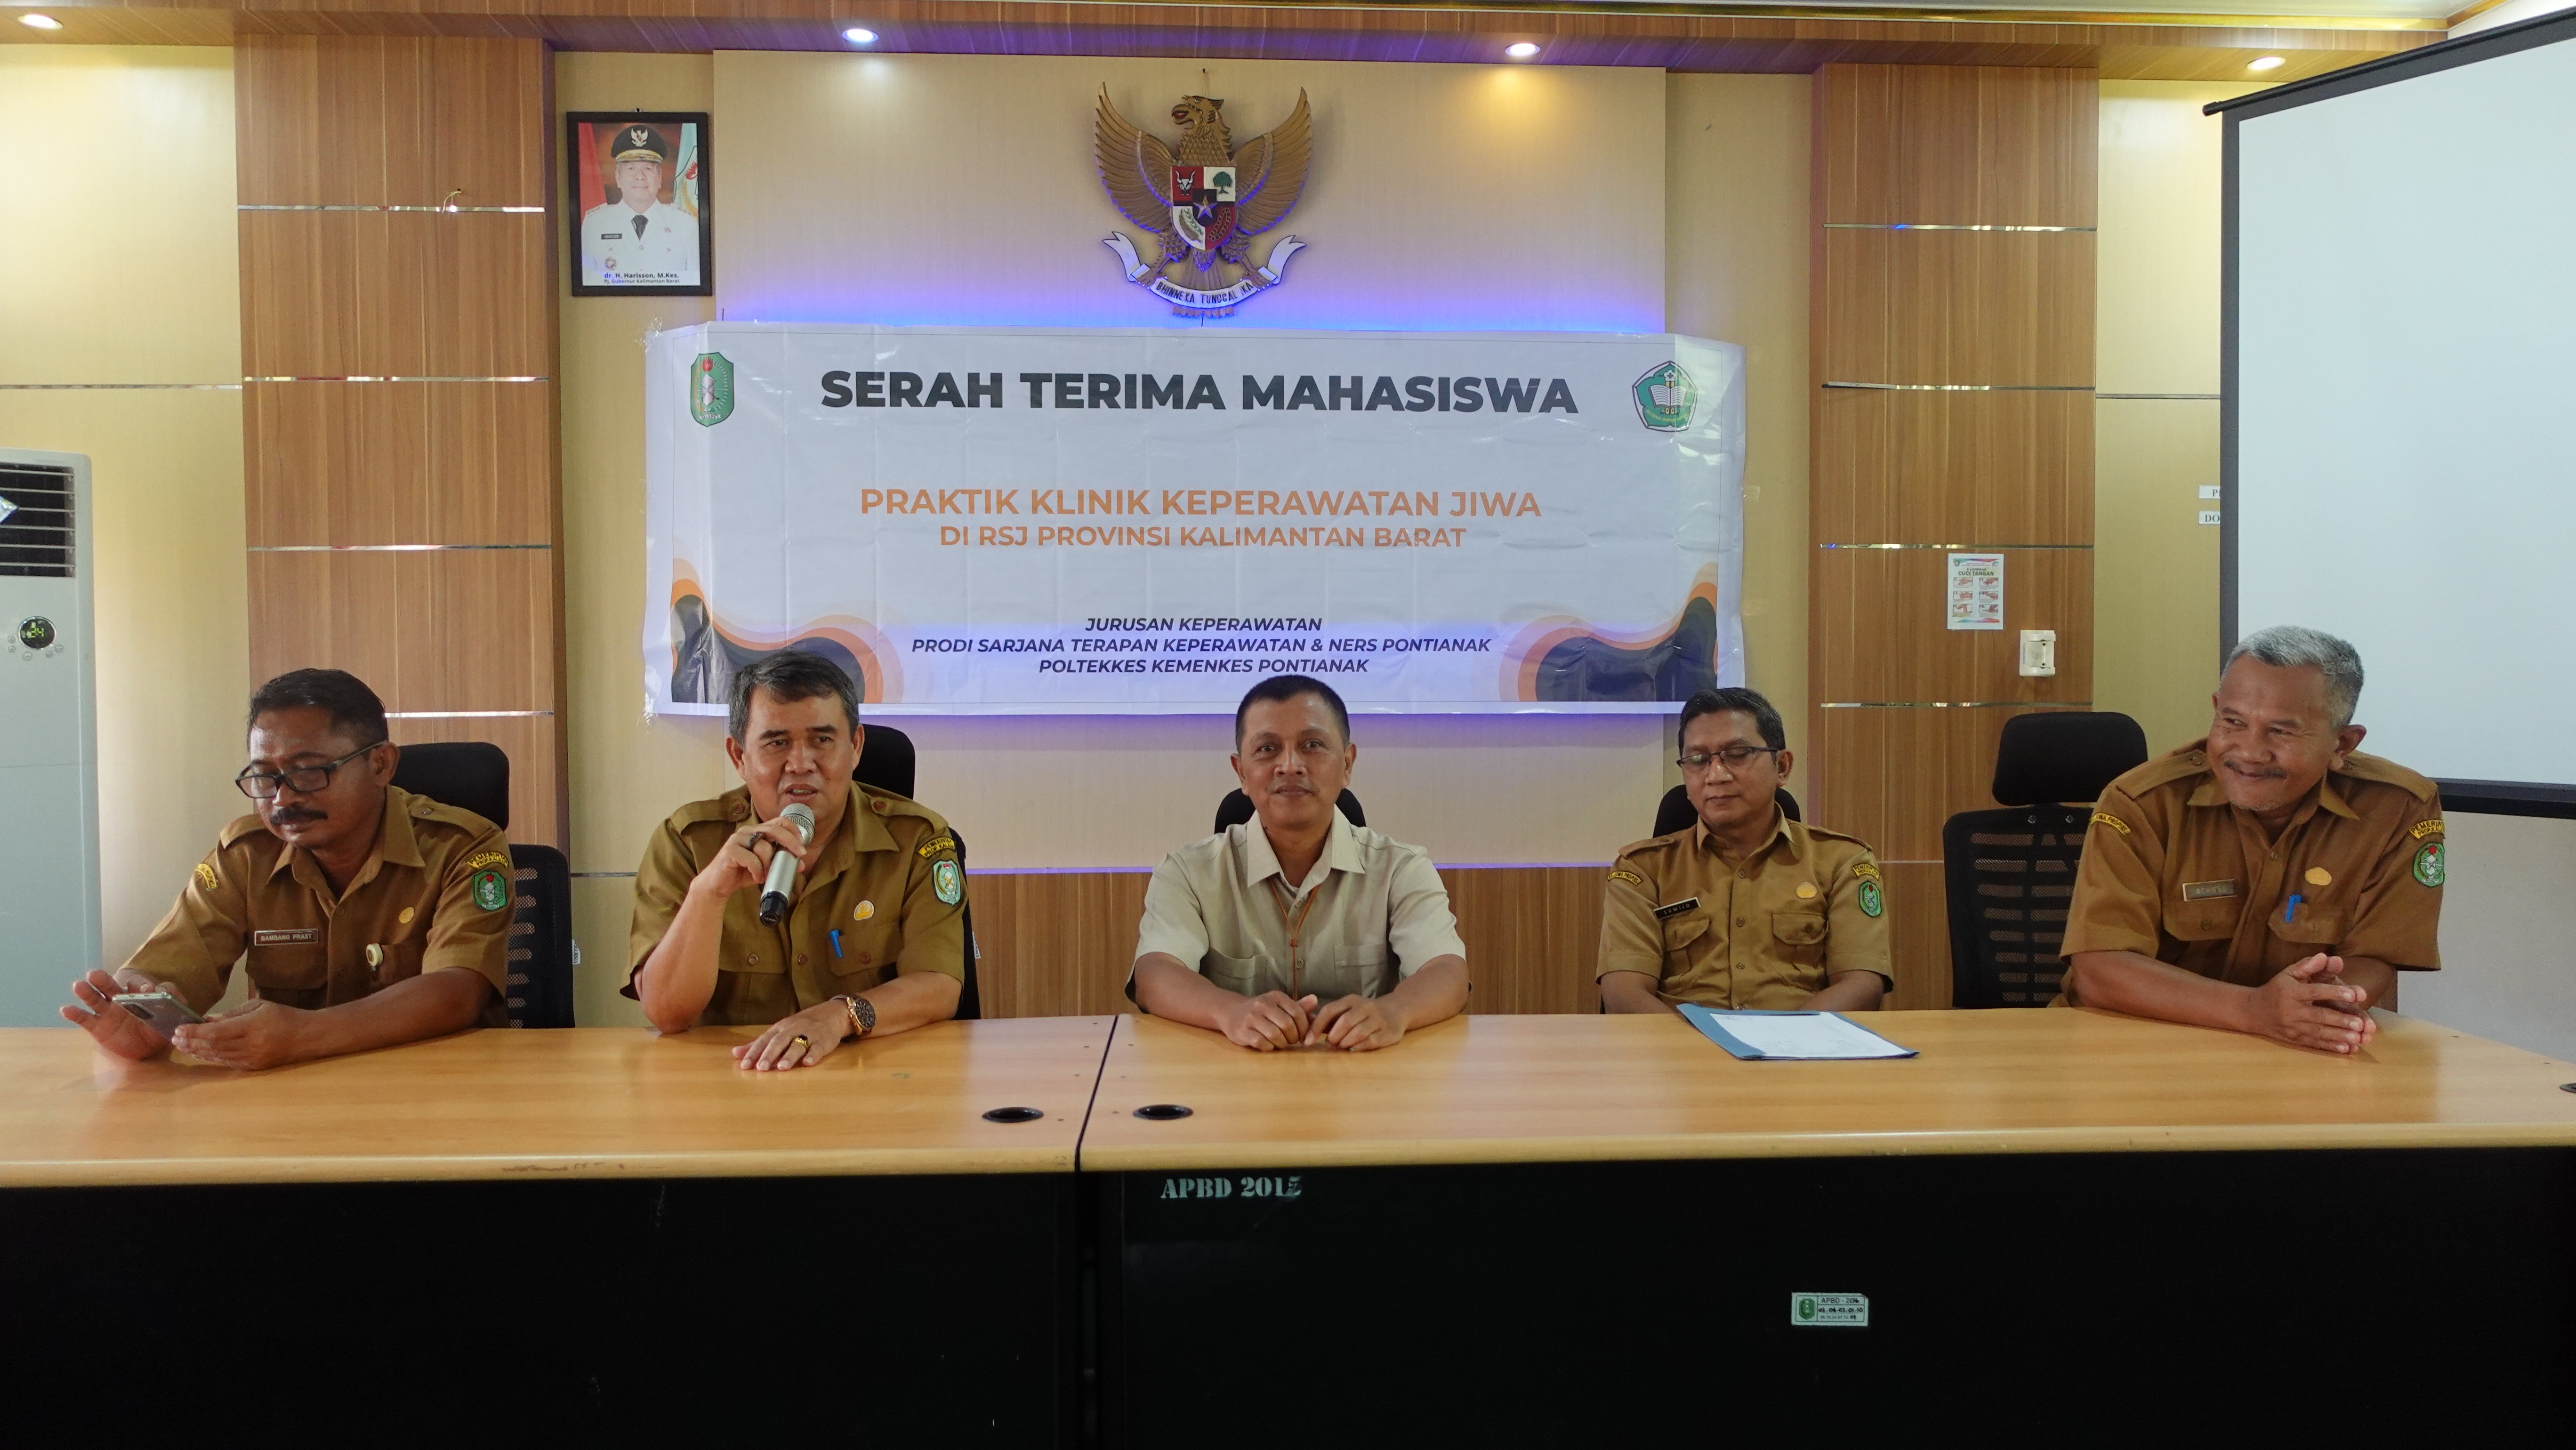 Pembukaan Kegiatan Praktik Klinik Keperawatan Jiwa Mahasiswa Jurusan Keperawatan Prodi Sarjana Terapan Keperawatan dan Ners Poltekkes Kemenkes Pontianak di Rumah Sakit Jiwa Provinsi Kalimantan Barat